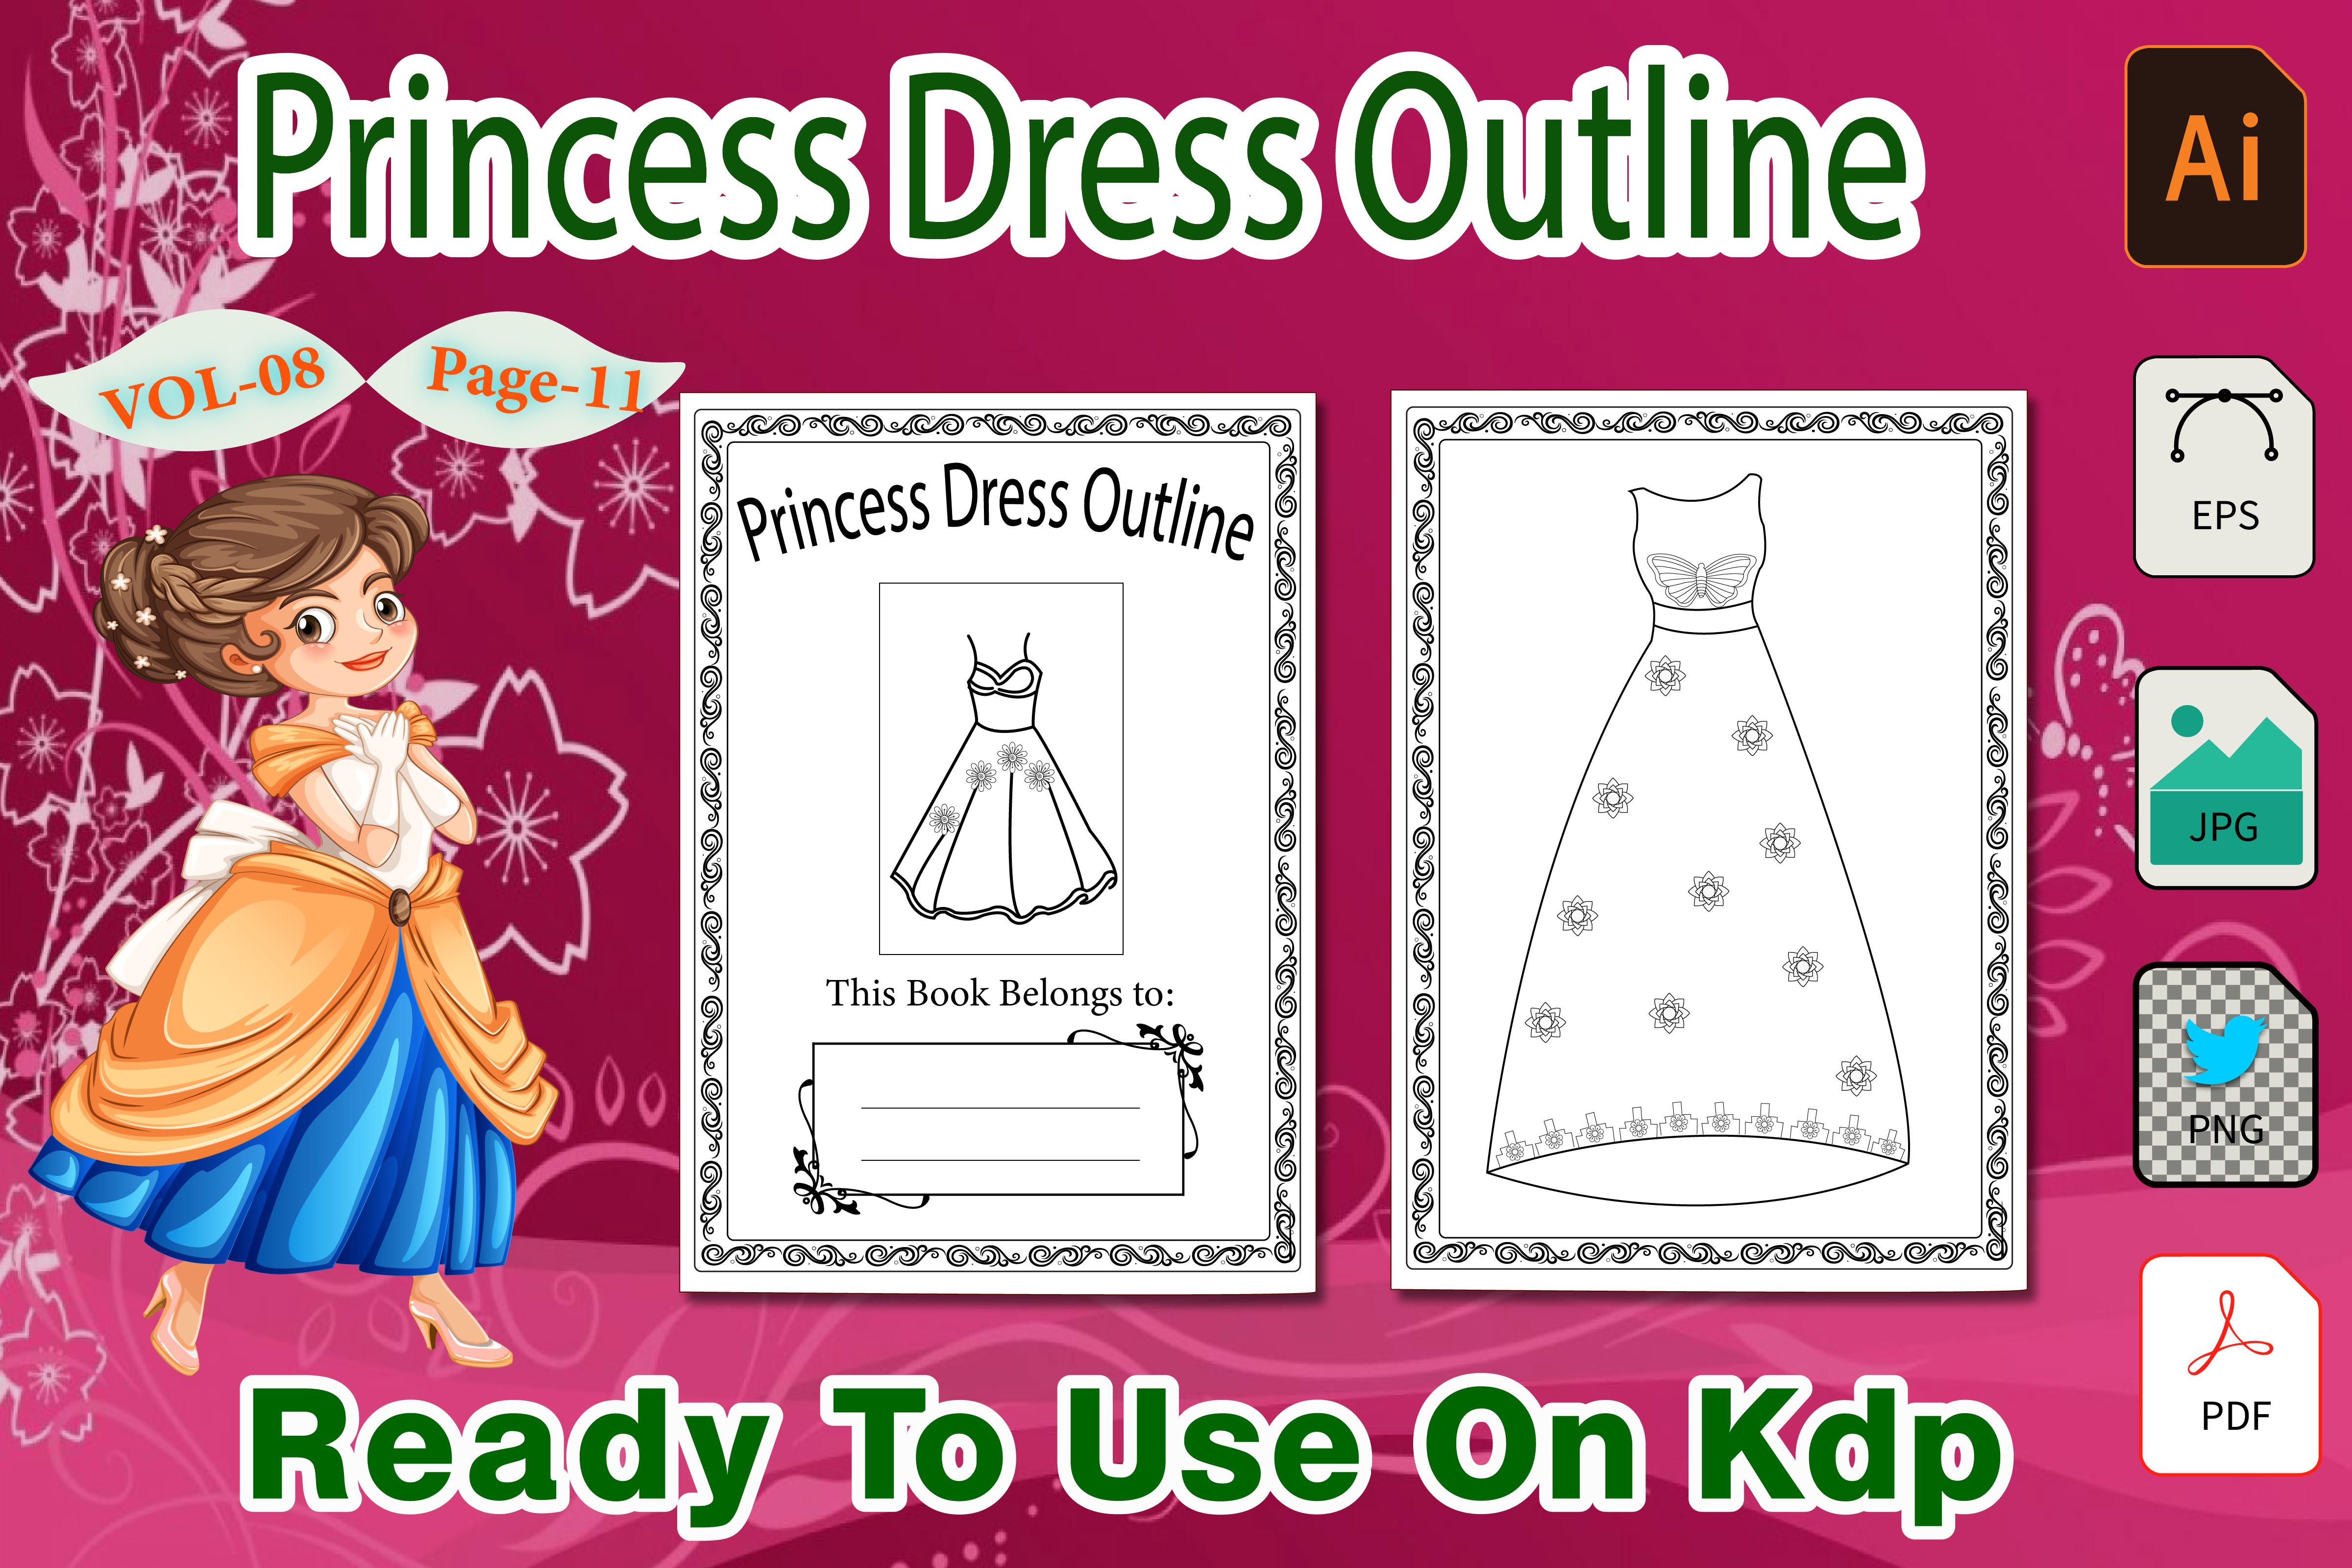 Barbie Princess Dress Outline Vol-08